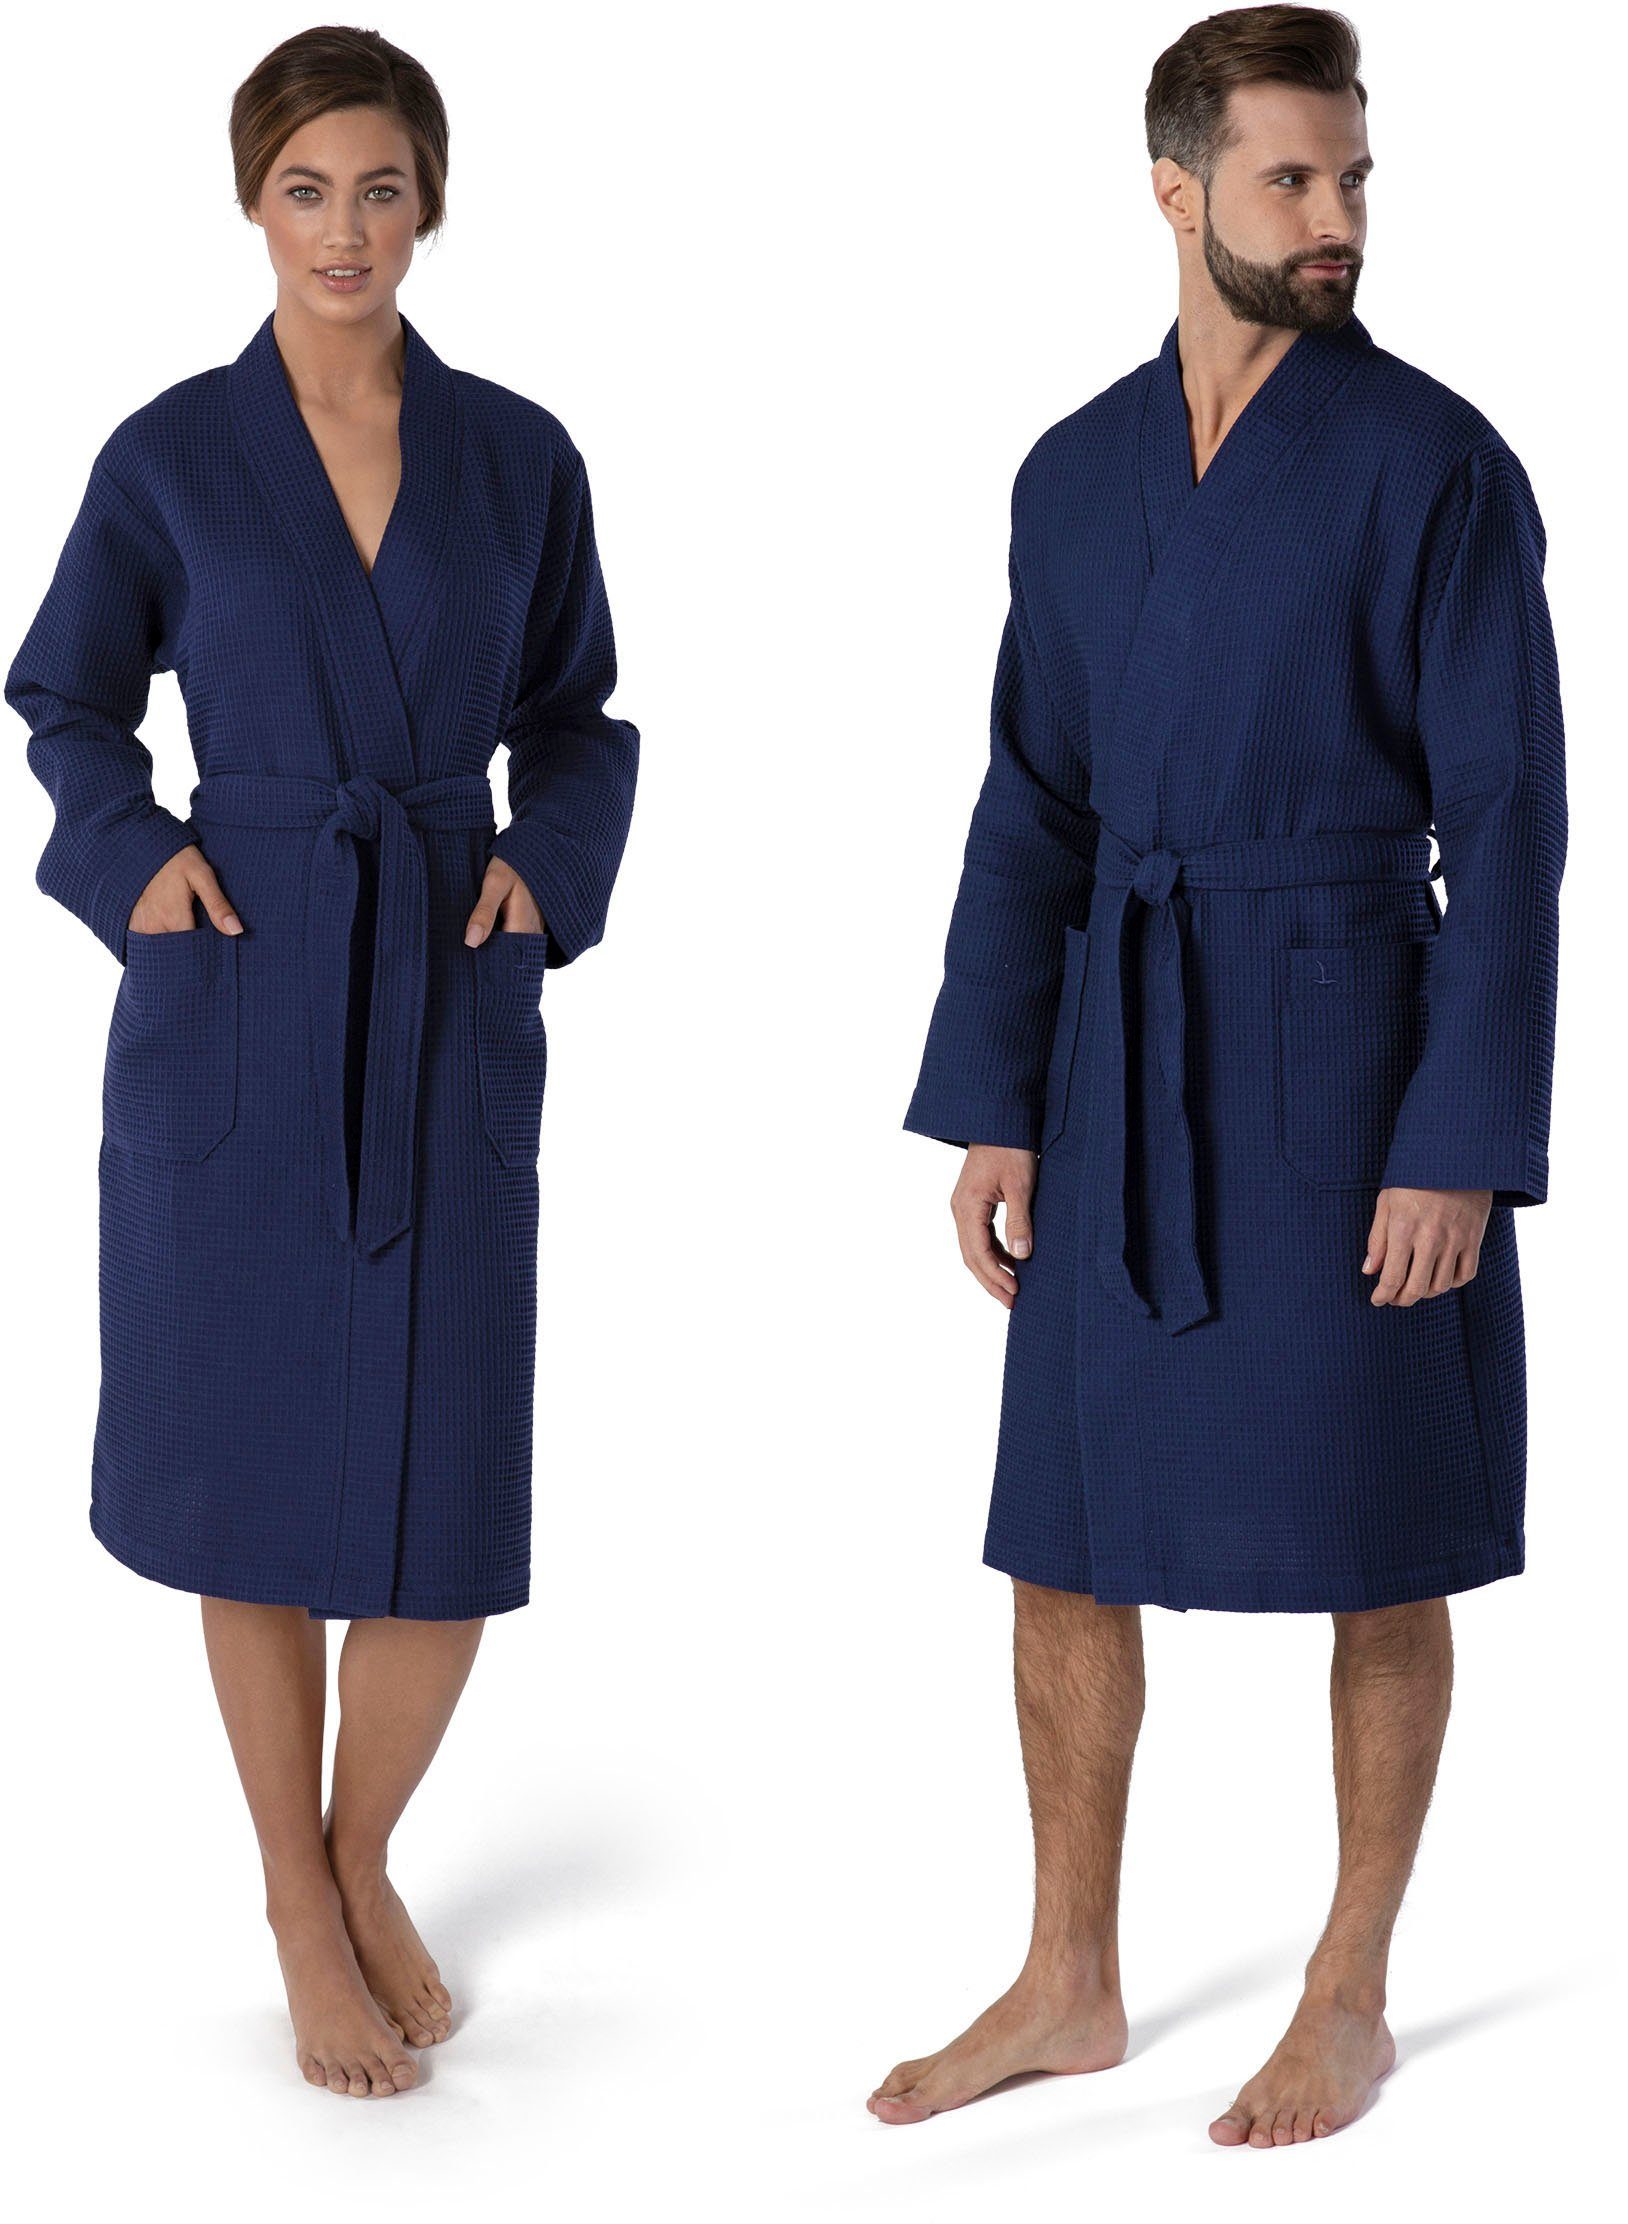 Piquée-Oberfläche Kimono-Kragen, Gürtel, Kimono Kurzform, Möve dunkelblau Homewear, Piqué,